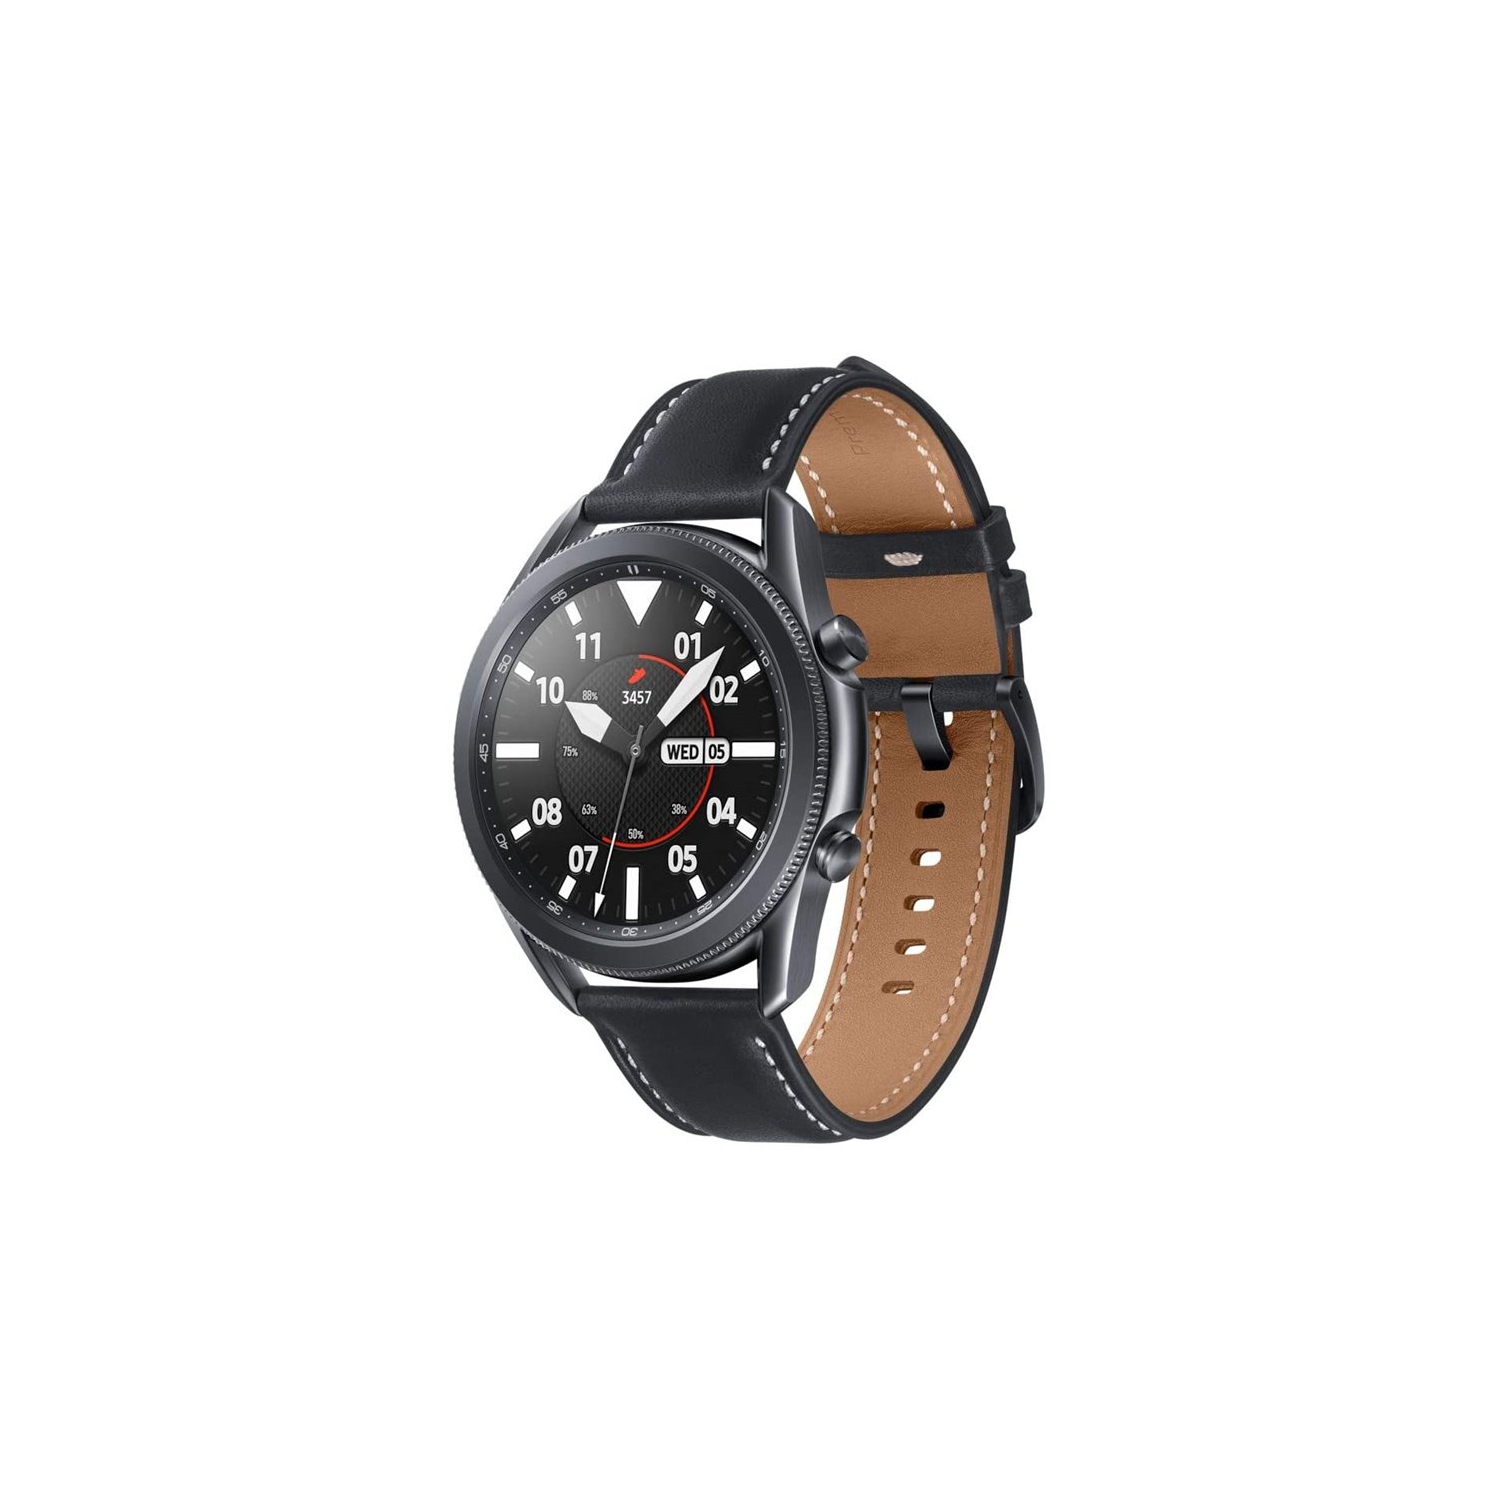 Samsung Galaxy Watch 3 SM-R840 (45mm) - Mystic Black [NEW in Box]